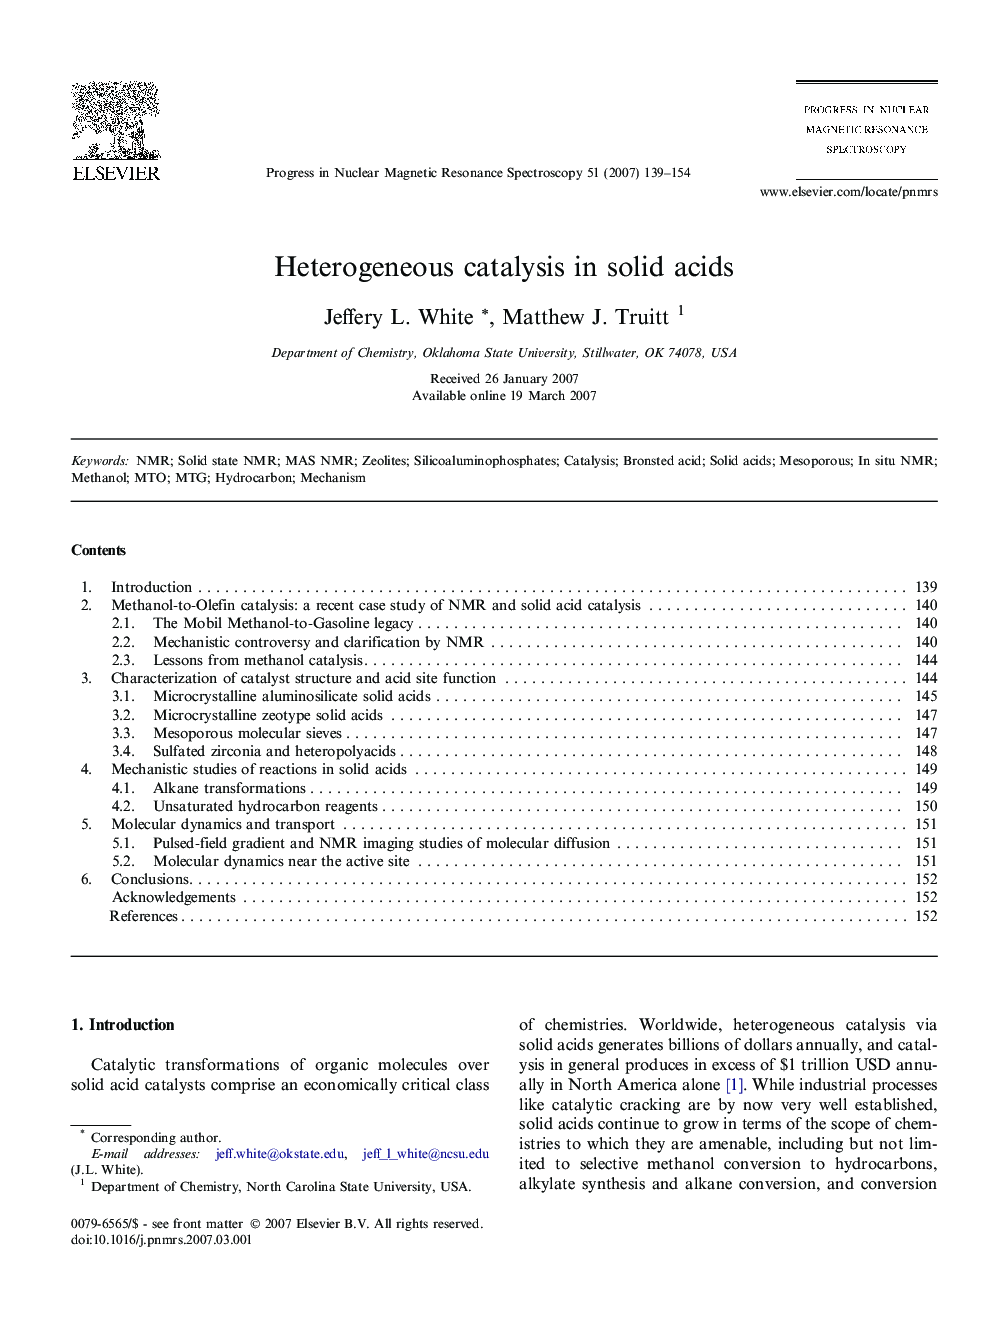 Heterogeneous catalysis in solid acids